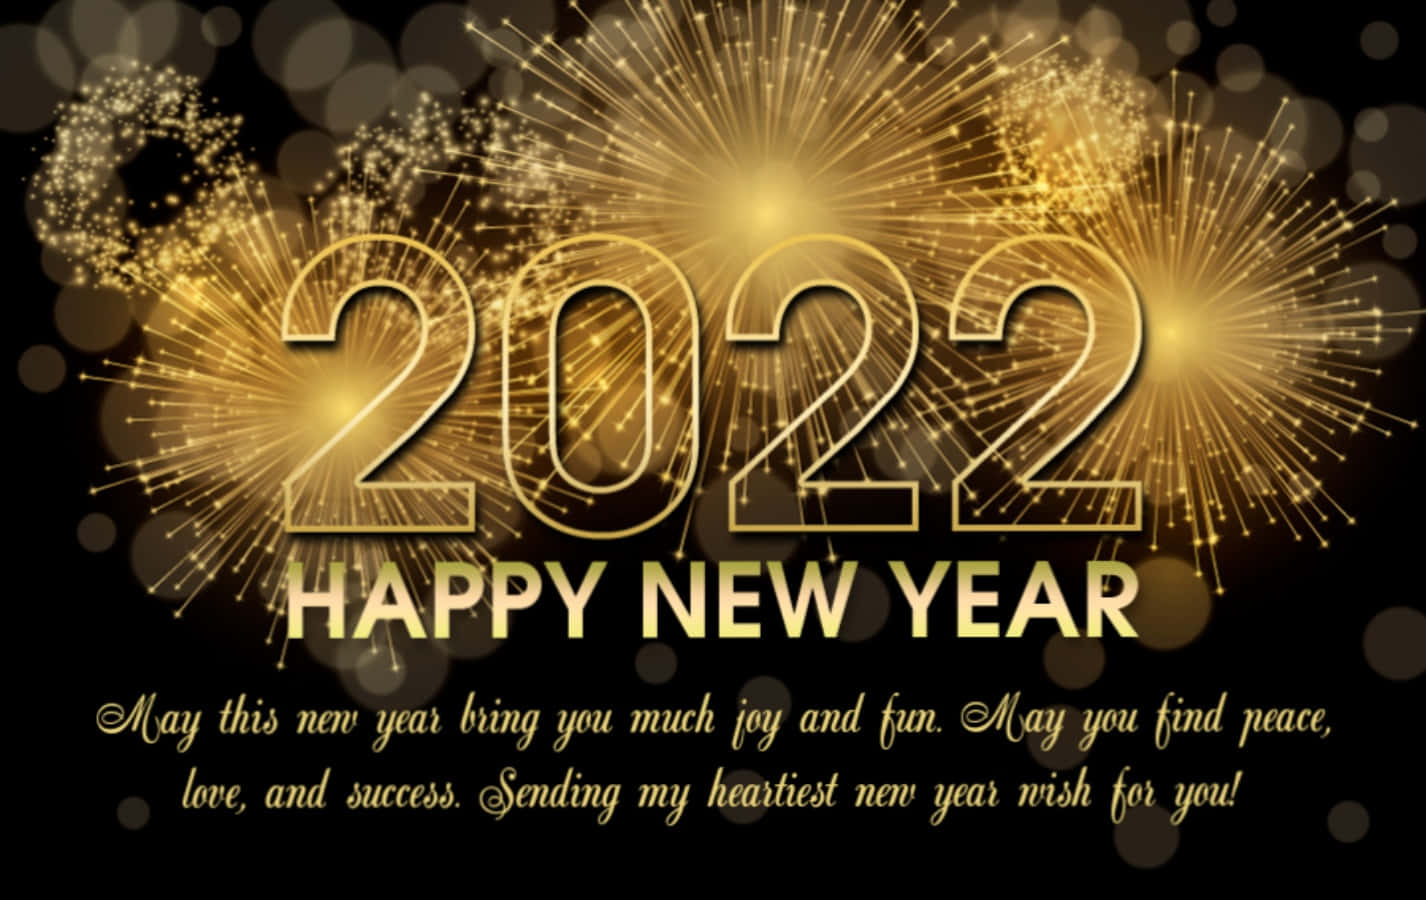 Fejrstarten På Et Helt Nyt År Sammen Med Dem, Du Holder Af. Godt Nytår 2022!